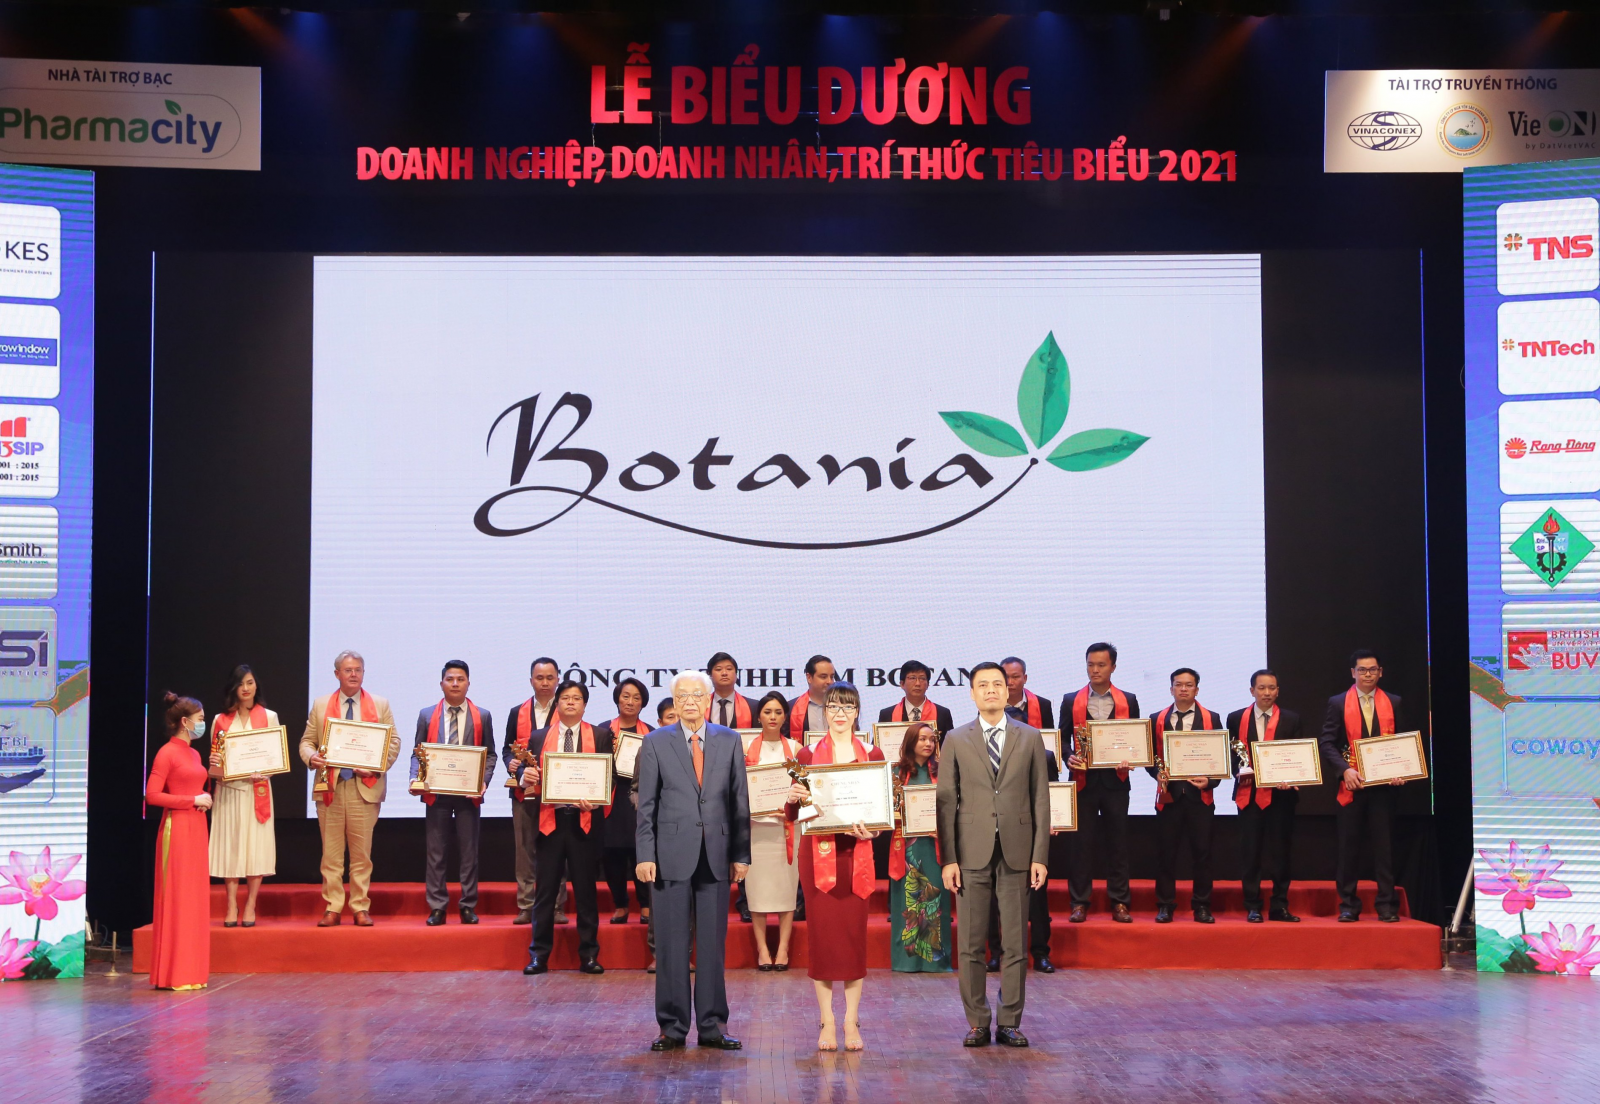 Công ty Botania đã vinh dự nhận giải thưởng Top 10 Thương hiệu được tin dùng nhất Việt Nam